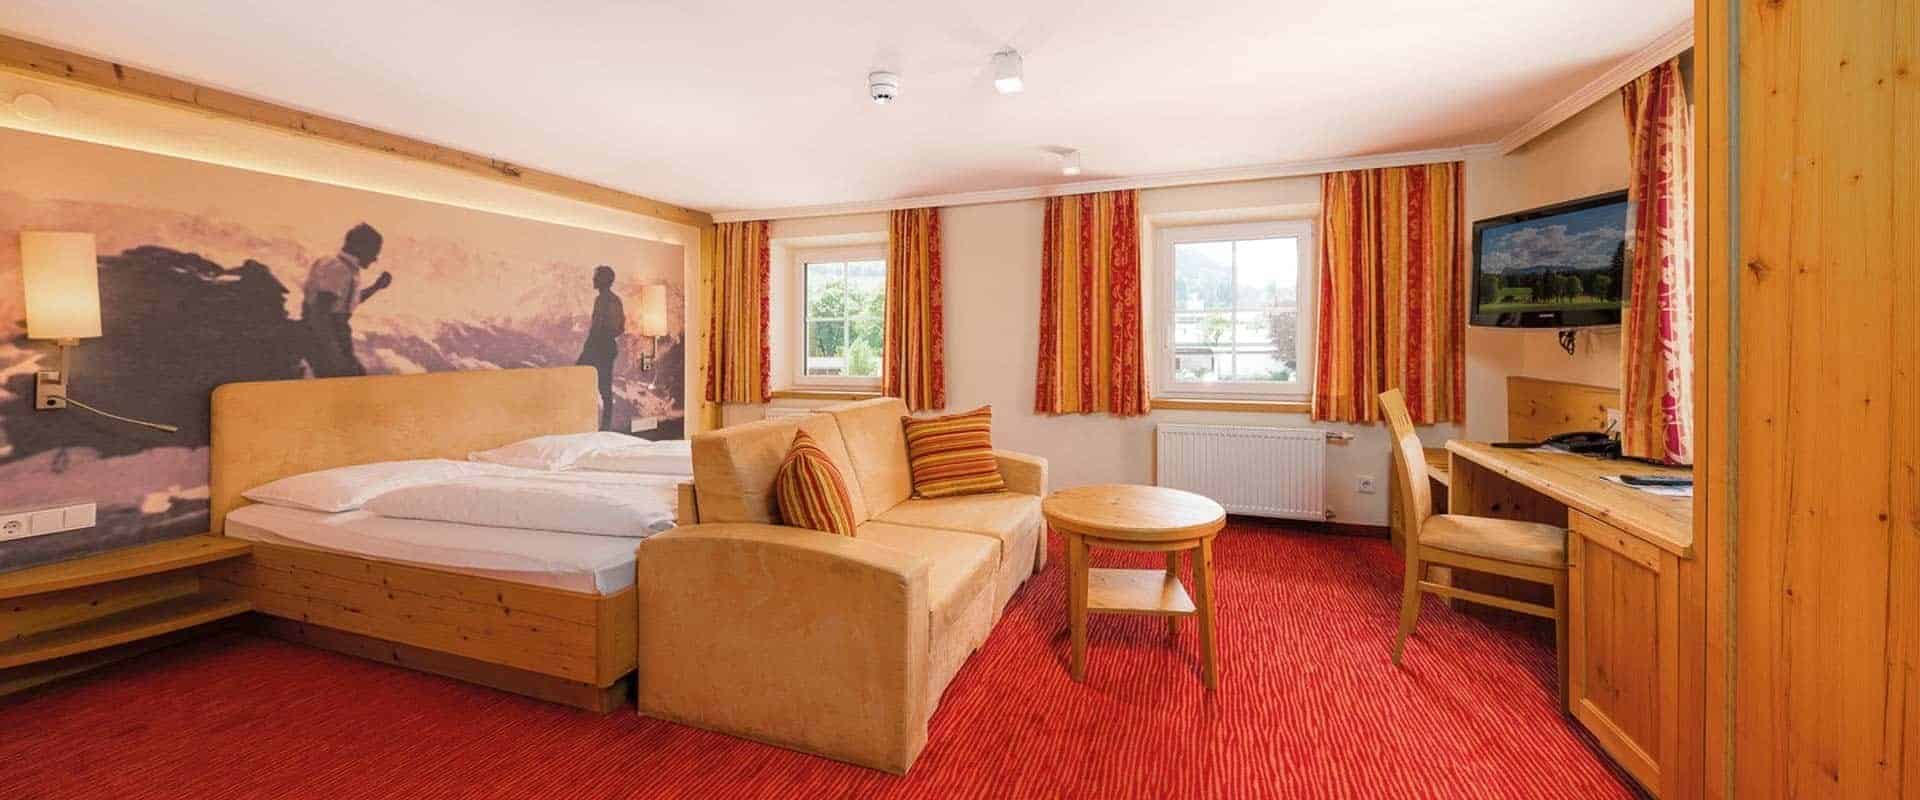 (c) Hotel-heitzmann.at